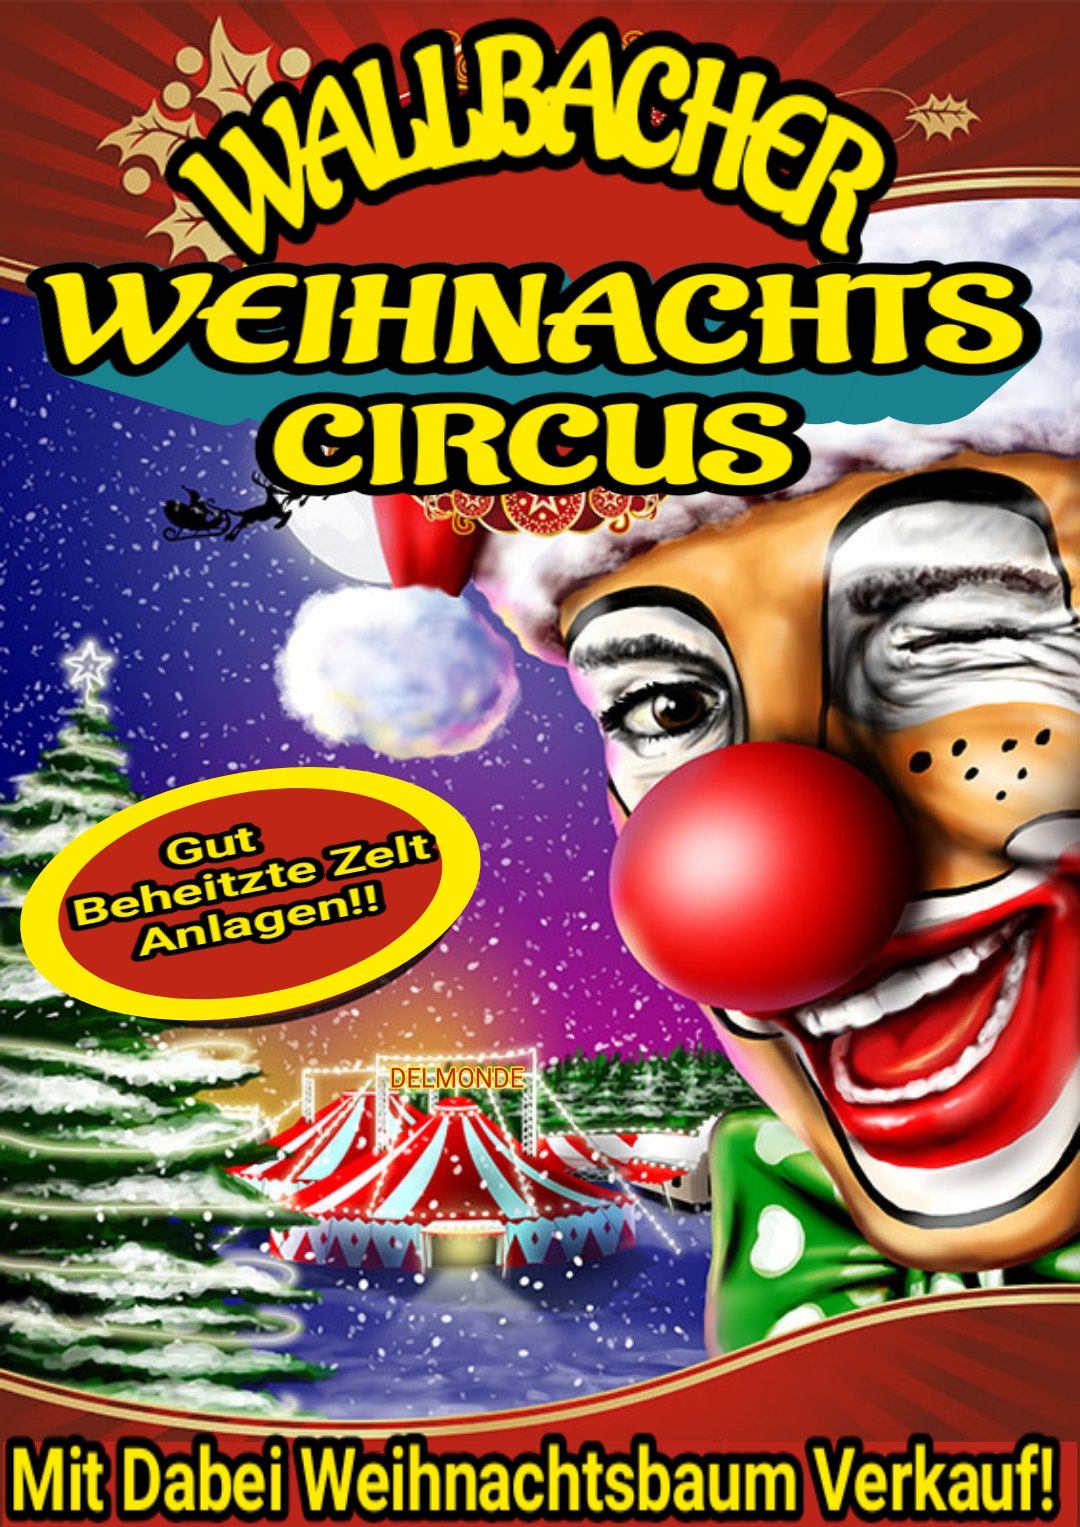 Wallbacher Weihnachtscircus Mit Baumverkauf!!